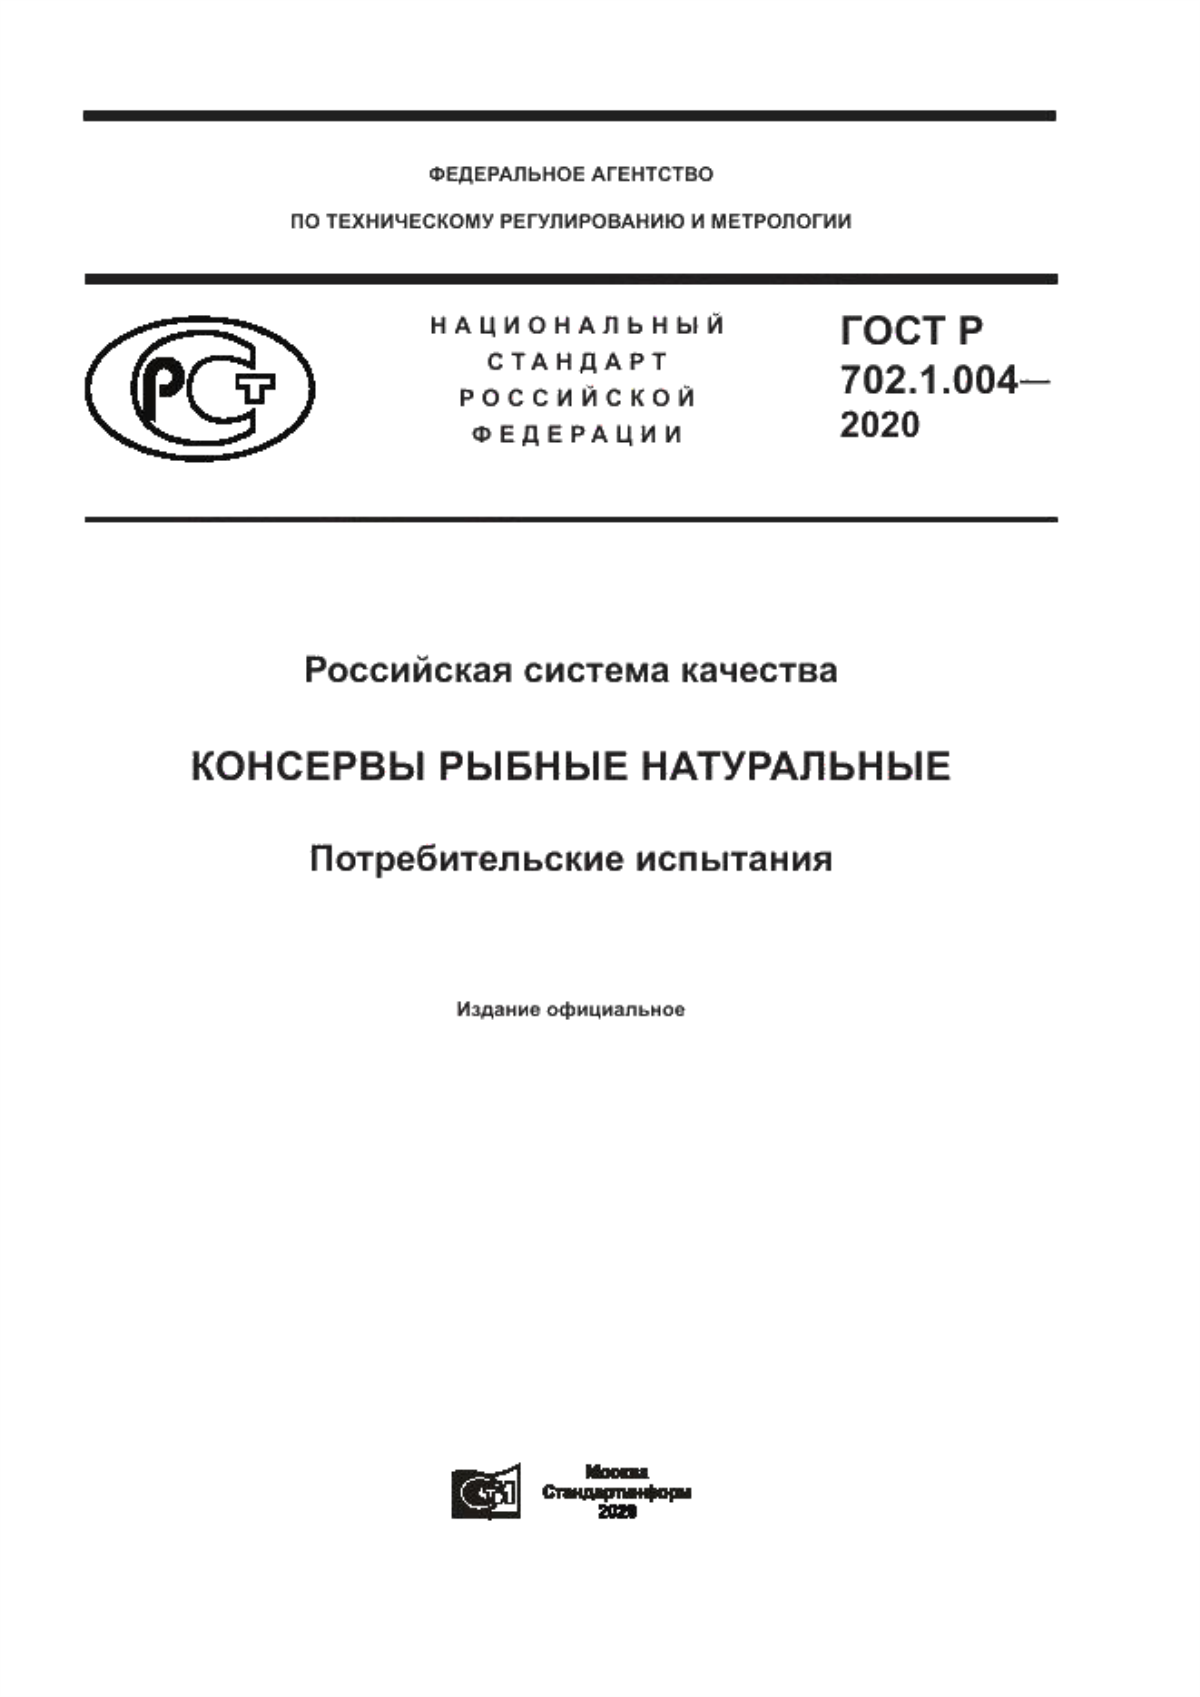 ГОСТ Р 702.1.004-2020 Российская система качества. Консервы рыбные натуральные. Потребительские испытания